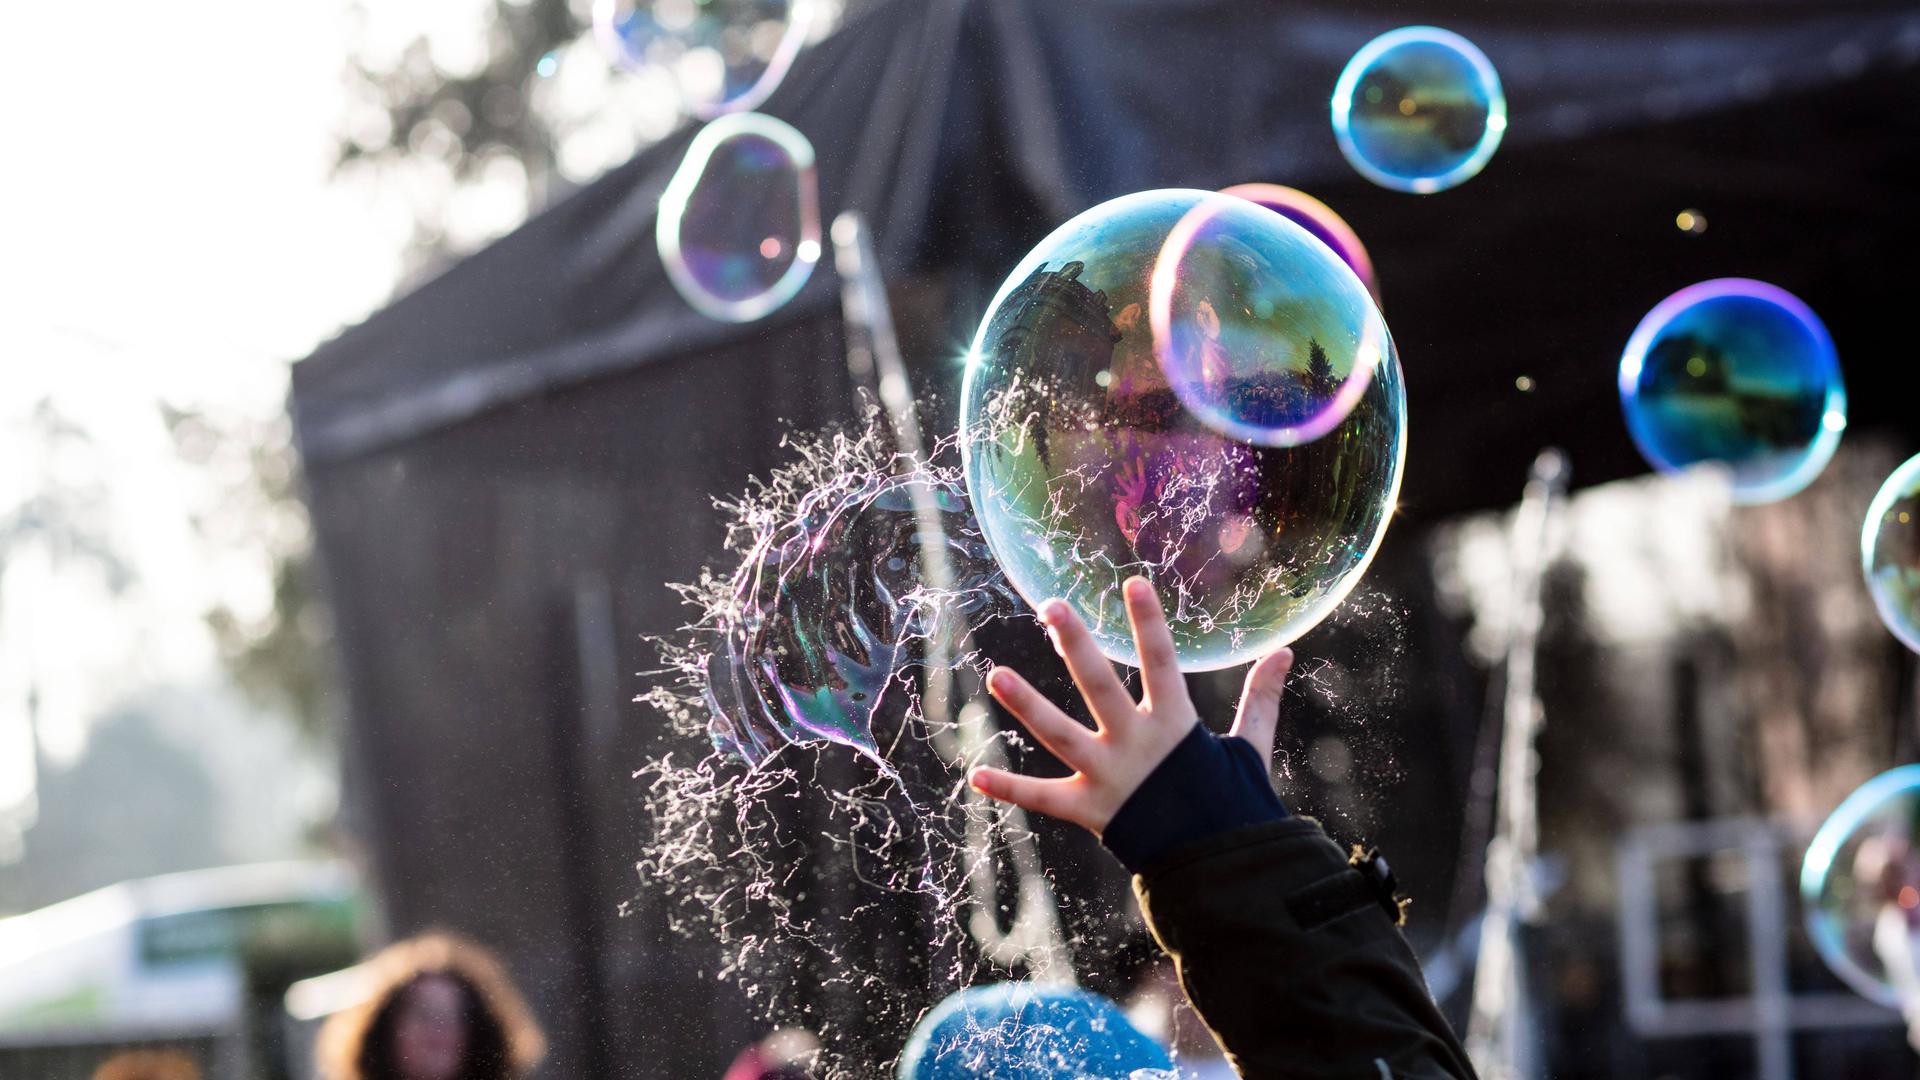 Viele Seifenblasen fliegen in der Luft. Eine Hand lässt eine Blase platzen.